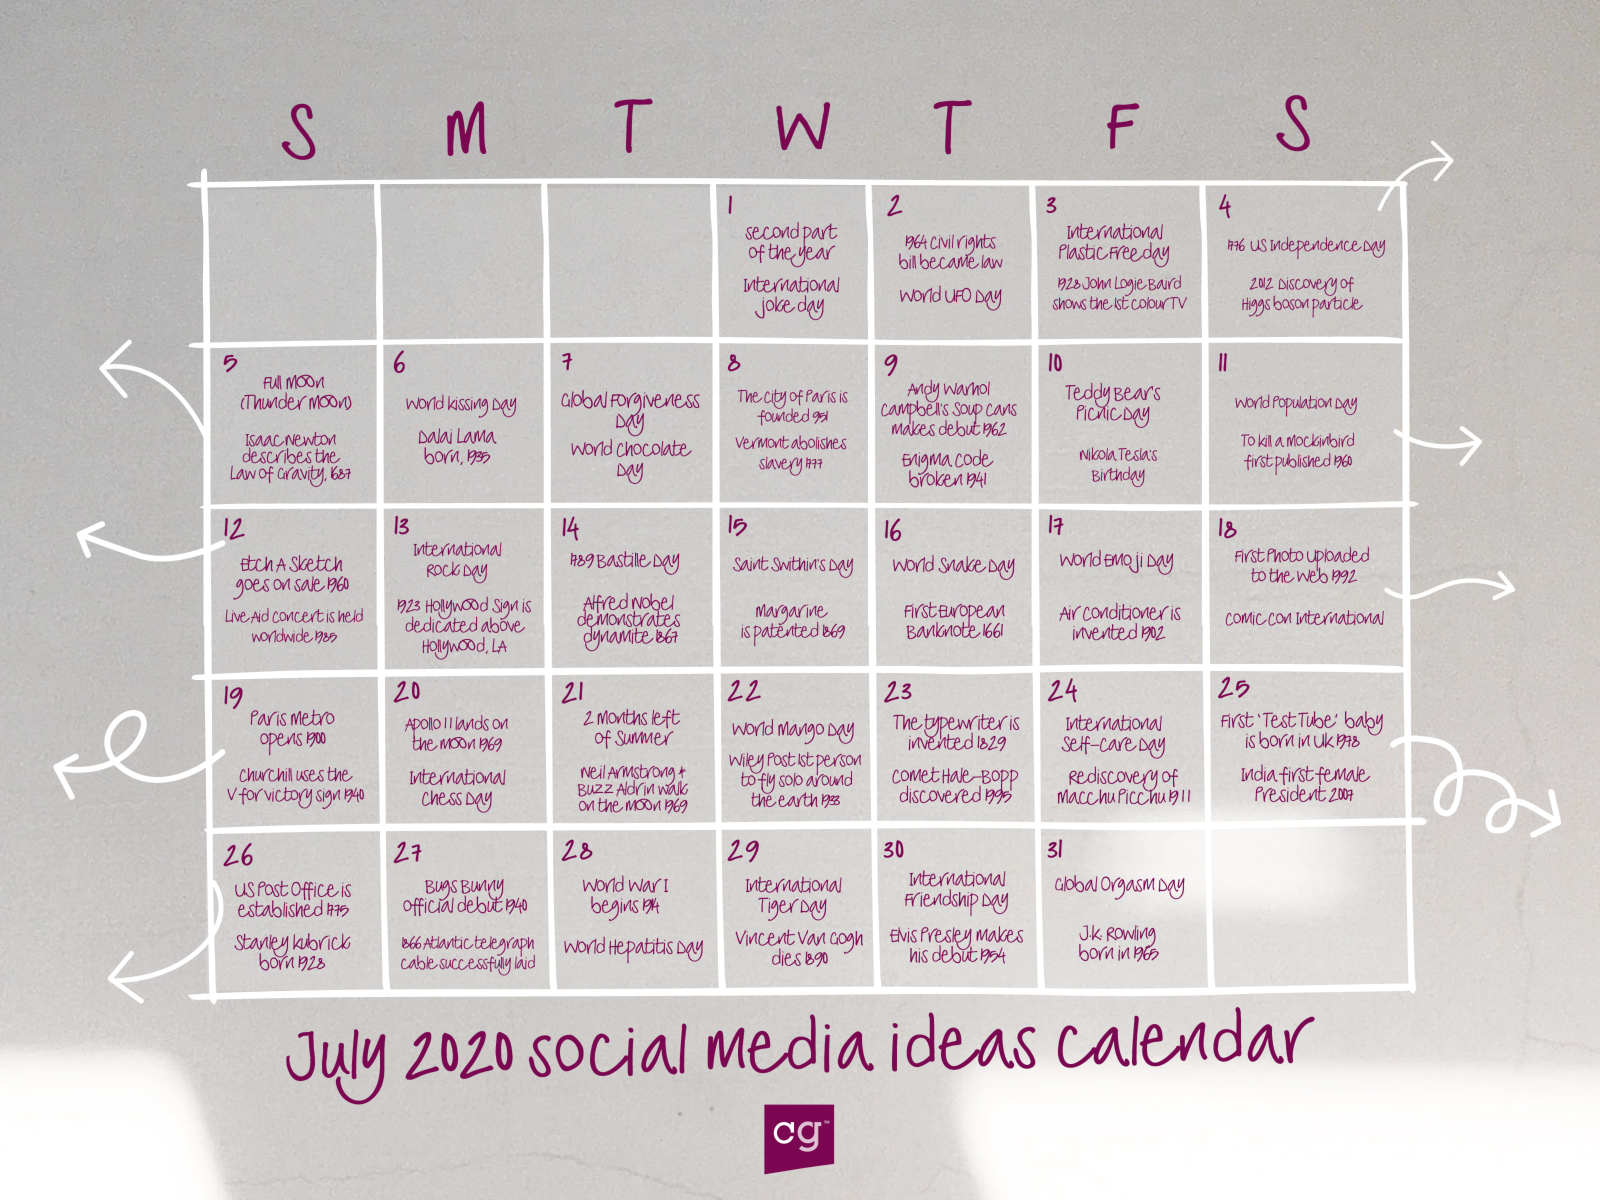 Social media calendar ideas July 2020 by Matt Rowan on Dribbble